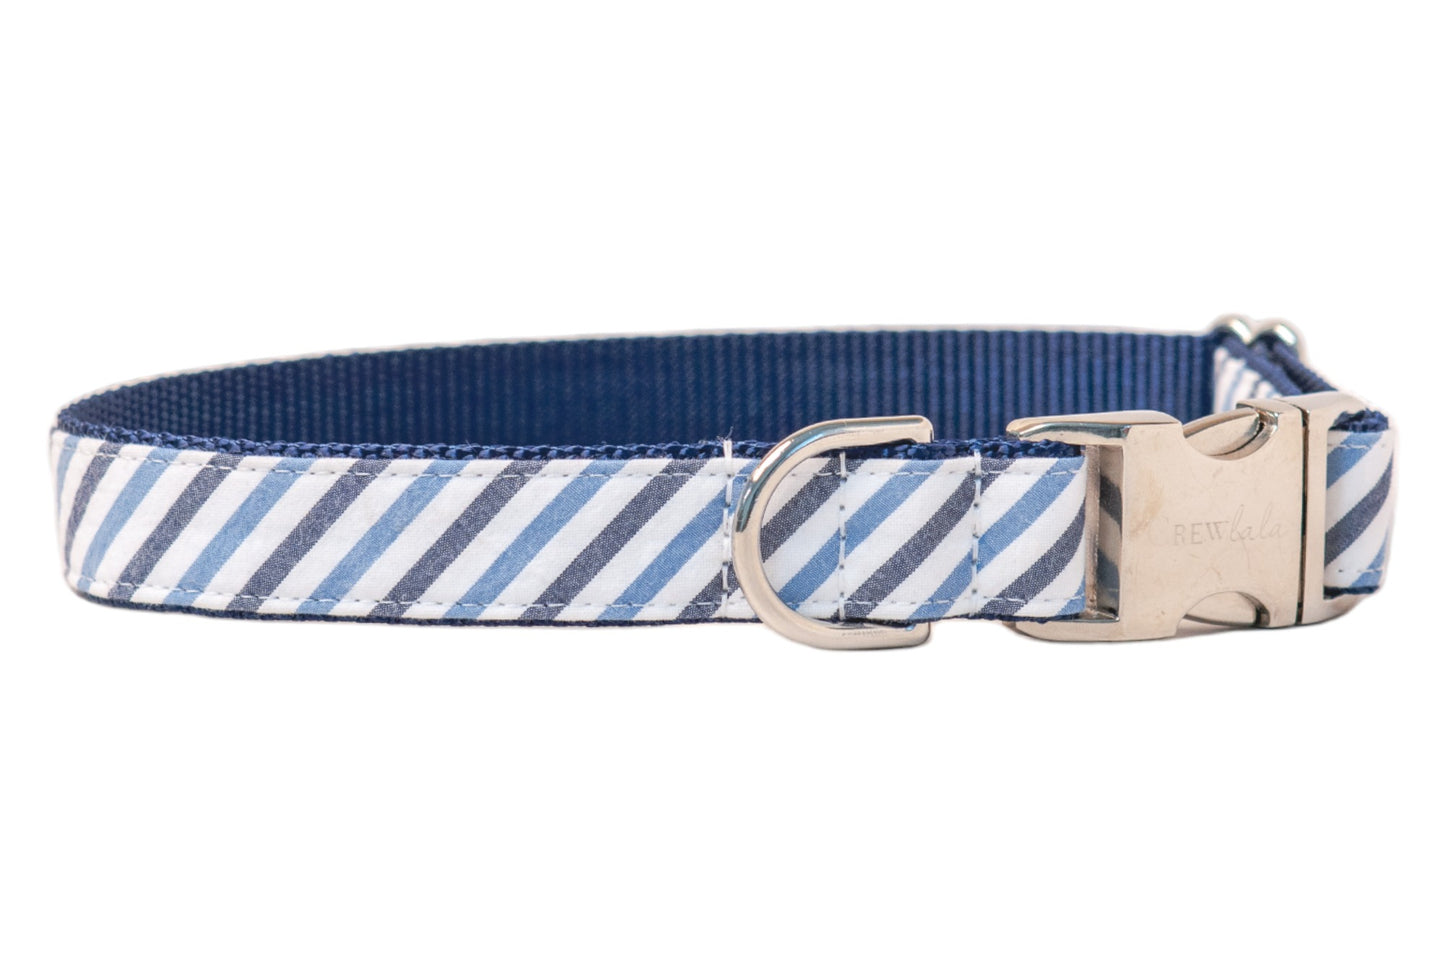 Blue & Navy Seersucker Bow Tie Dog Collar - Crew LaLa